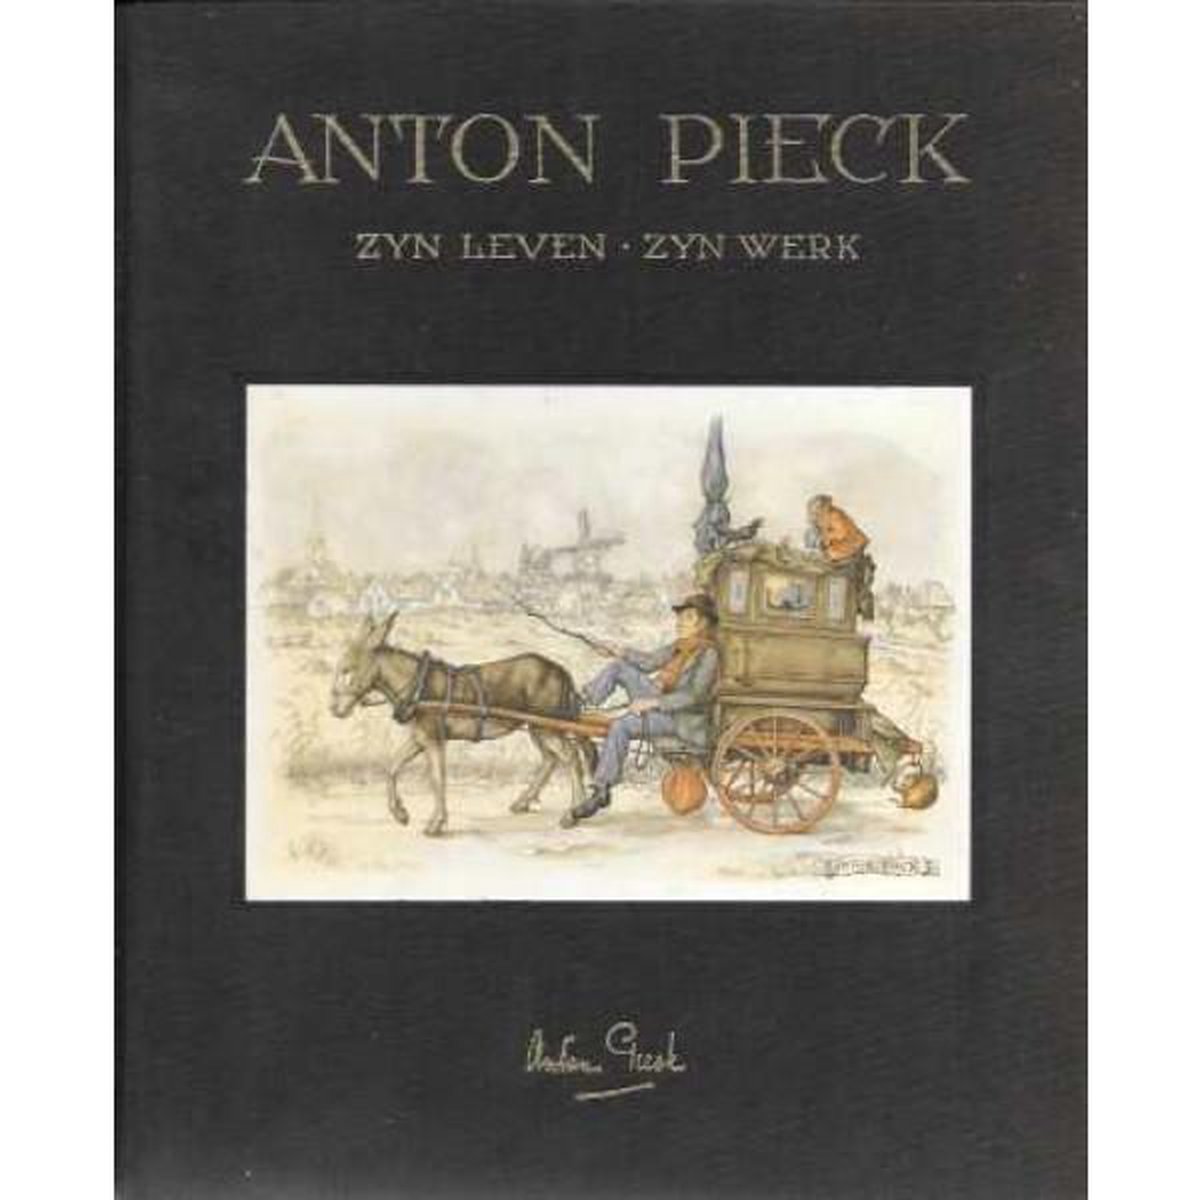 Anton Pieck zijn leven - zijn werk